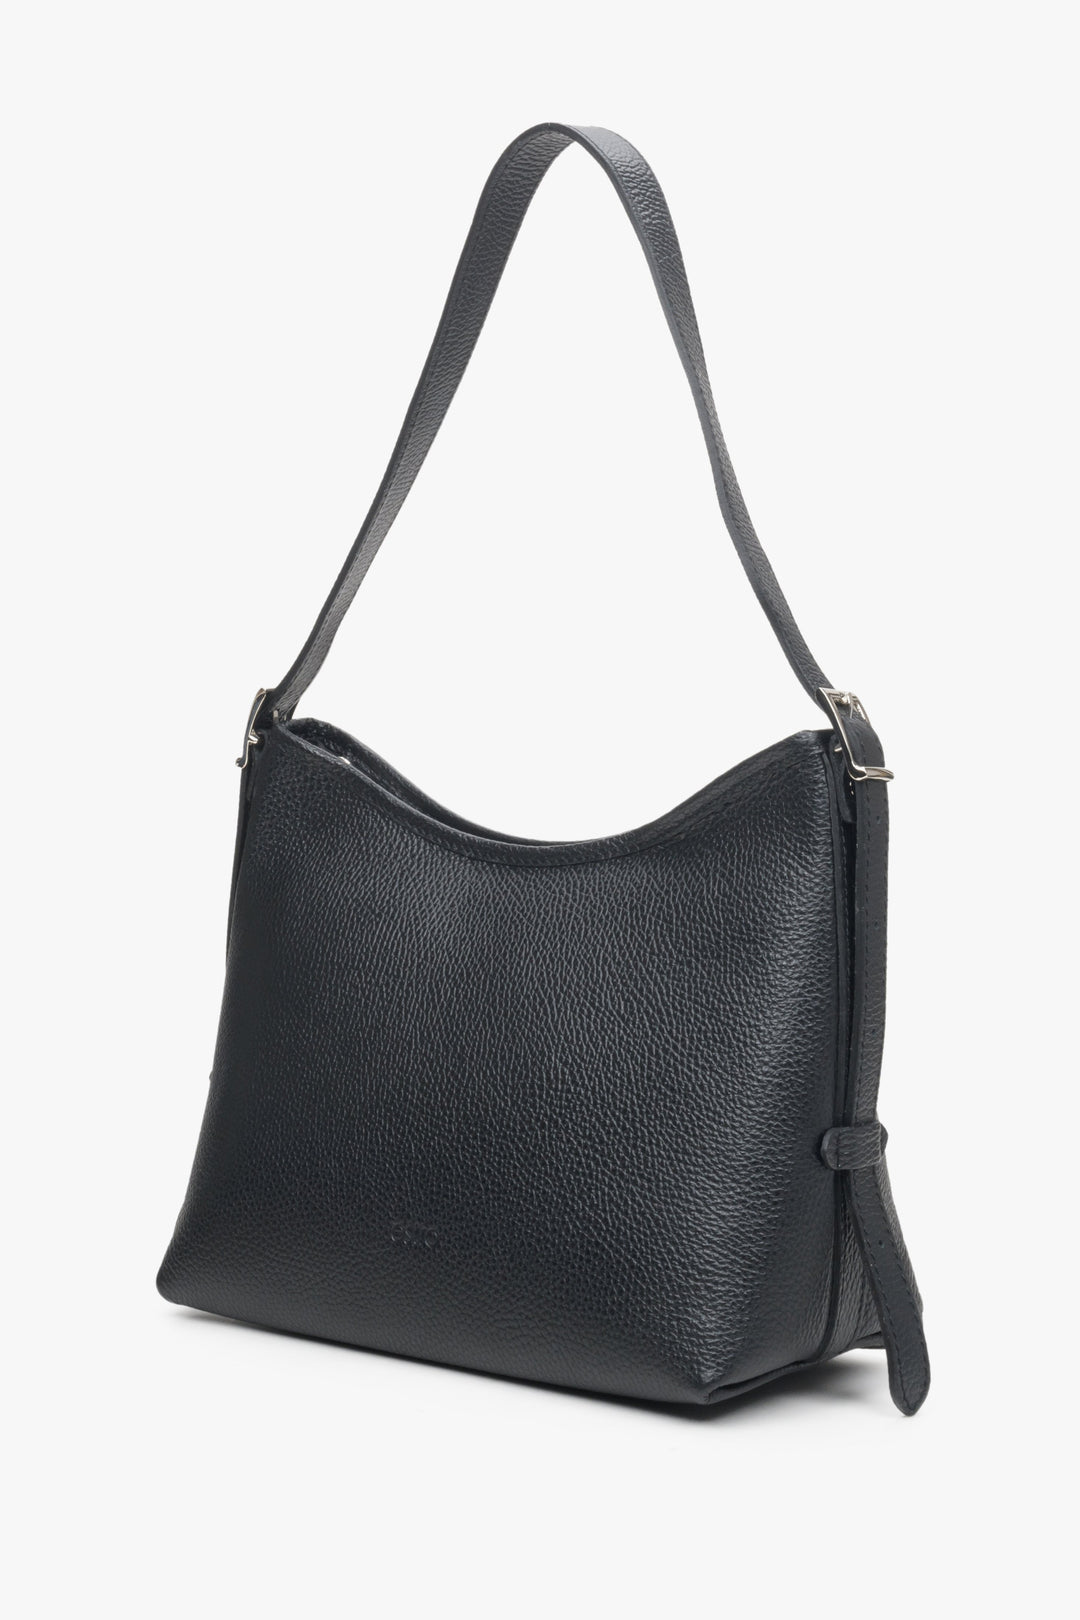 Black shoulder bag made of genuine leather by Estro.